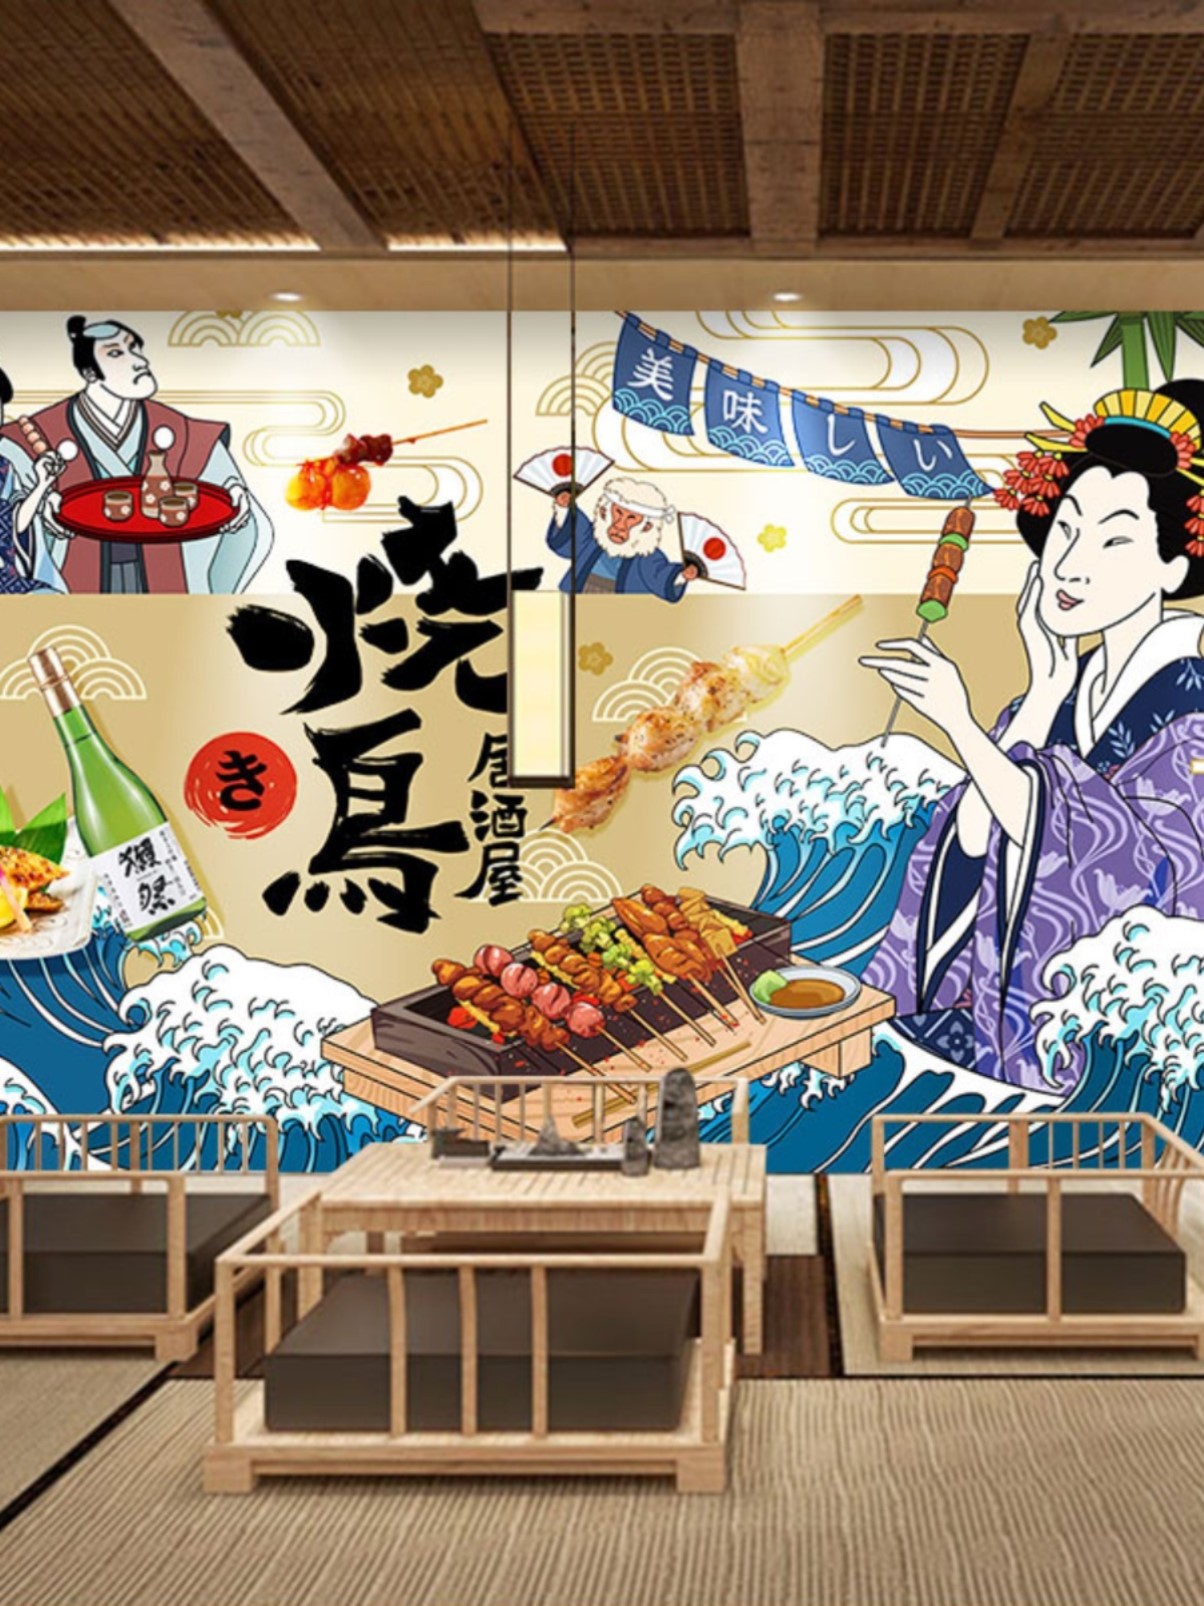 日本烧鸟装饰画墙纸日式烤肉店串烧海报墙面壁画广告纸居酒屋壁纸图片